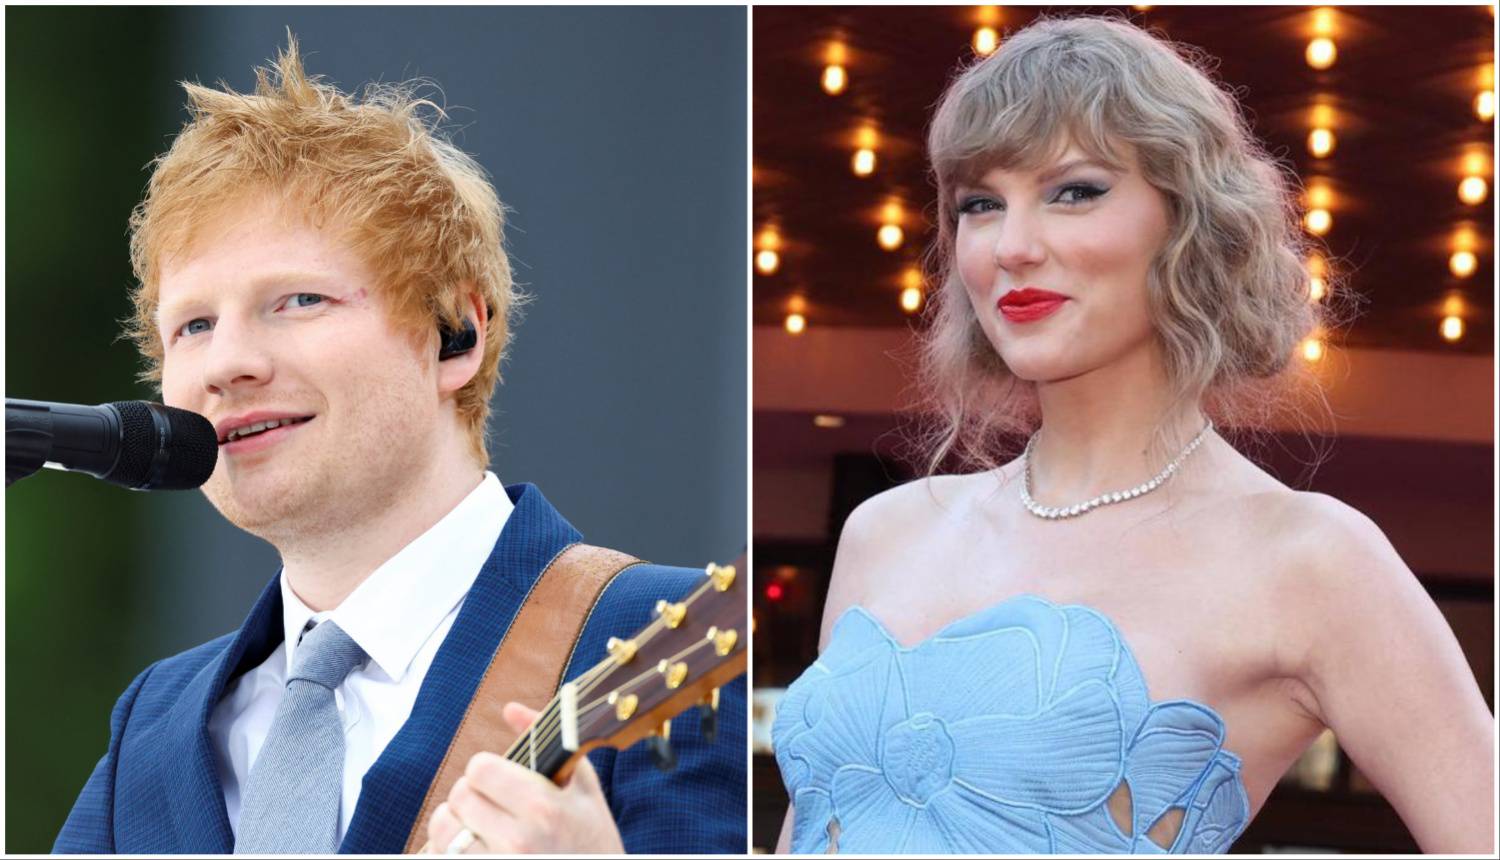 ANKETA Sheeran stiže u Zagreb, a Taylor isti dan nastupa u Beču. Na čiji koncert planirate ići?